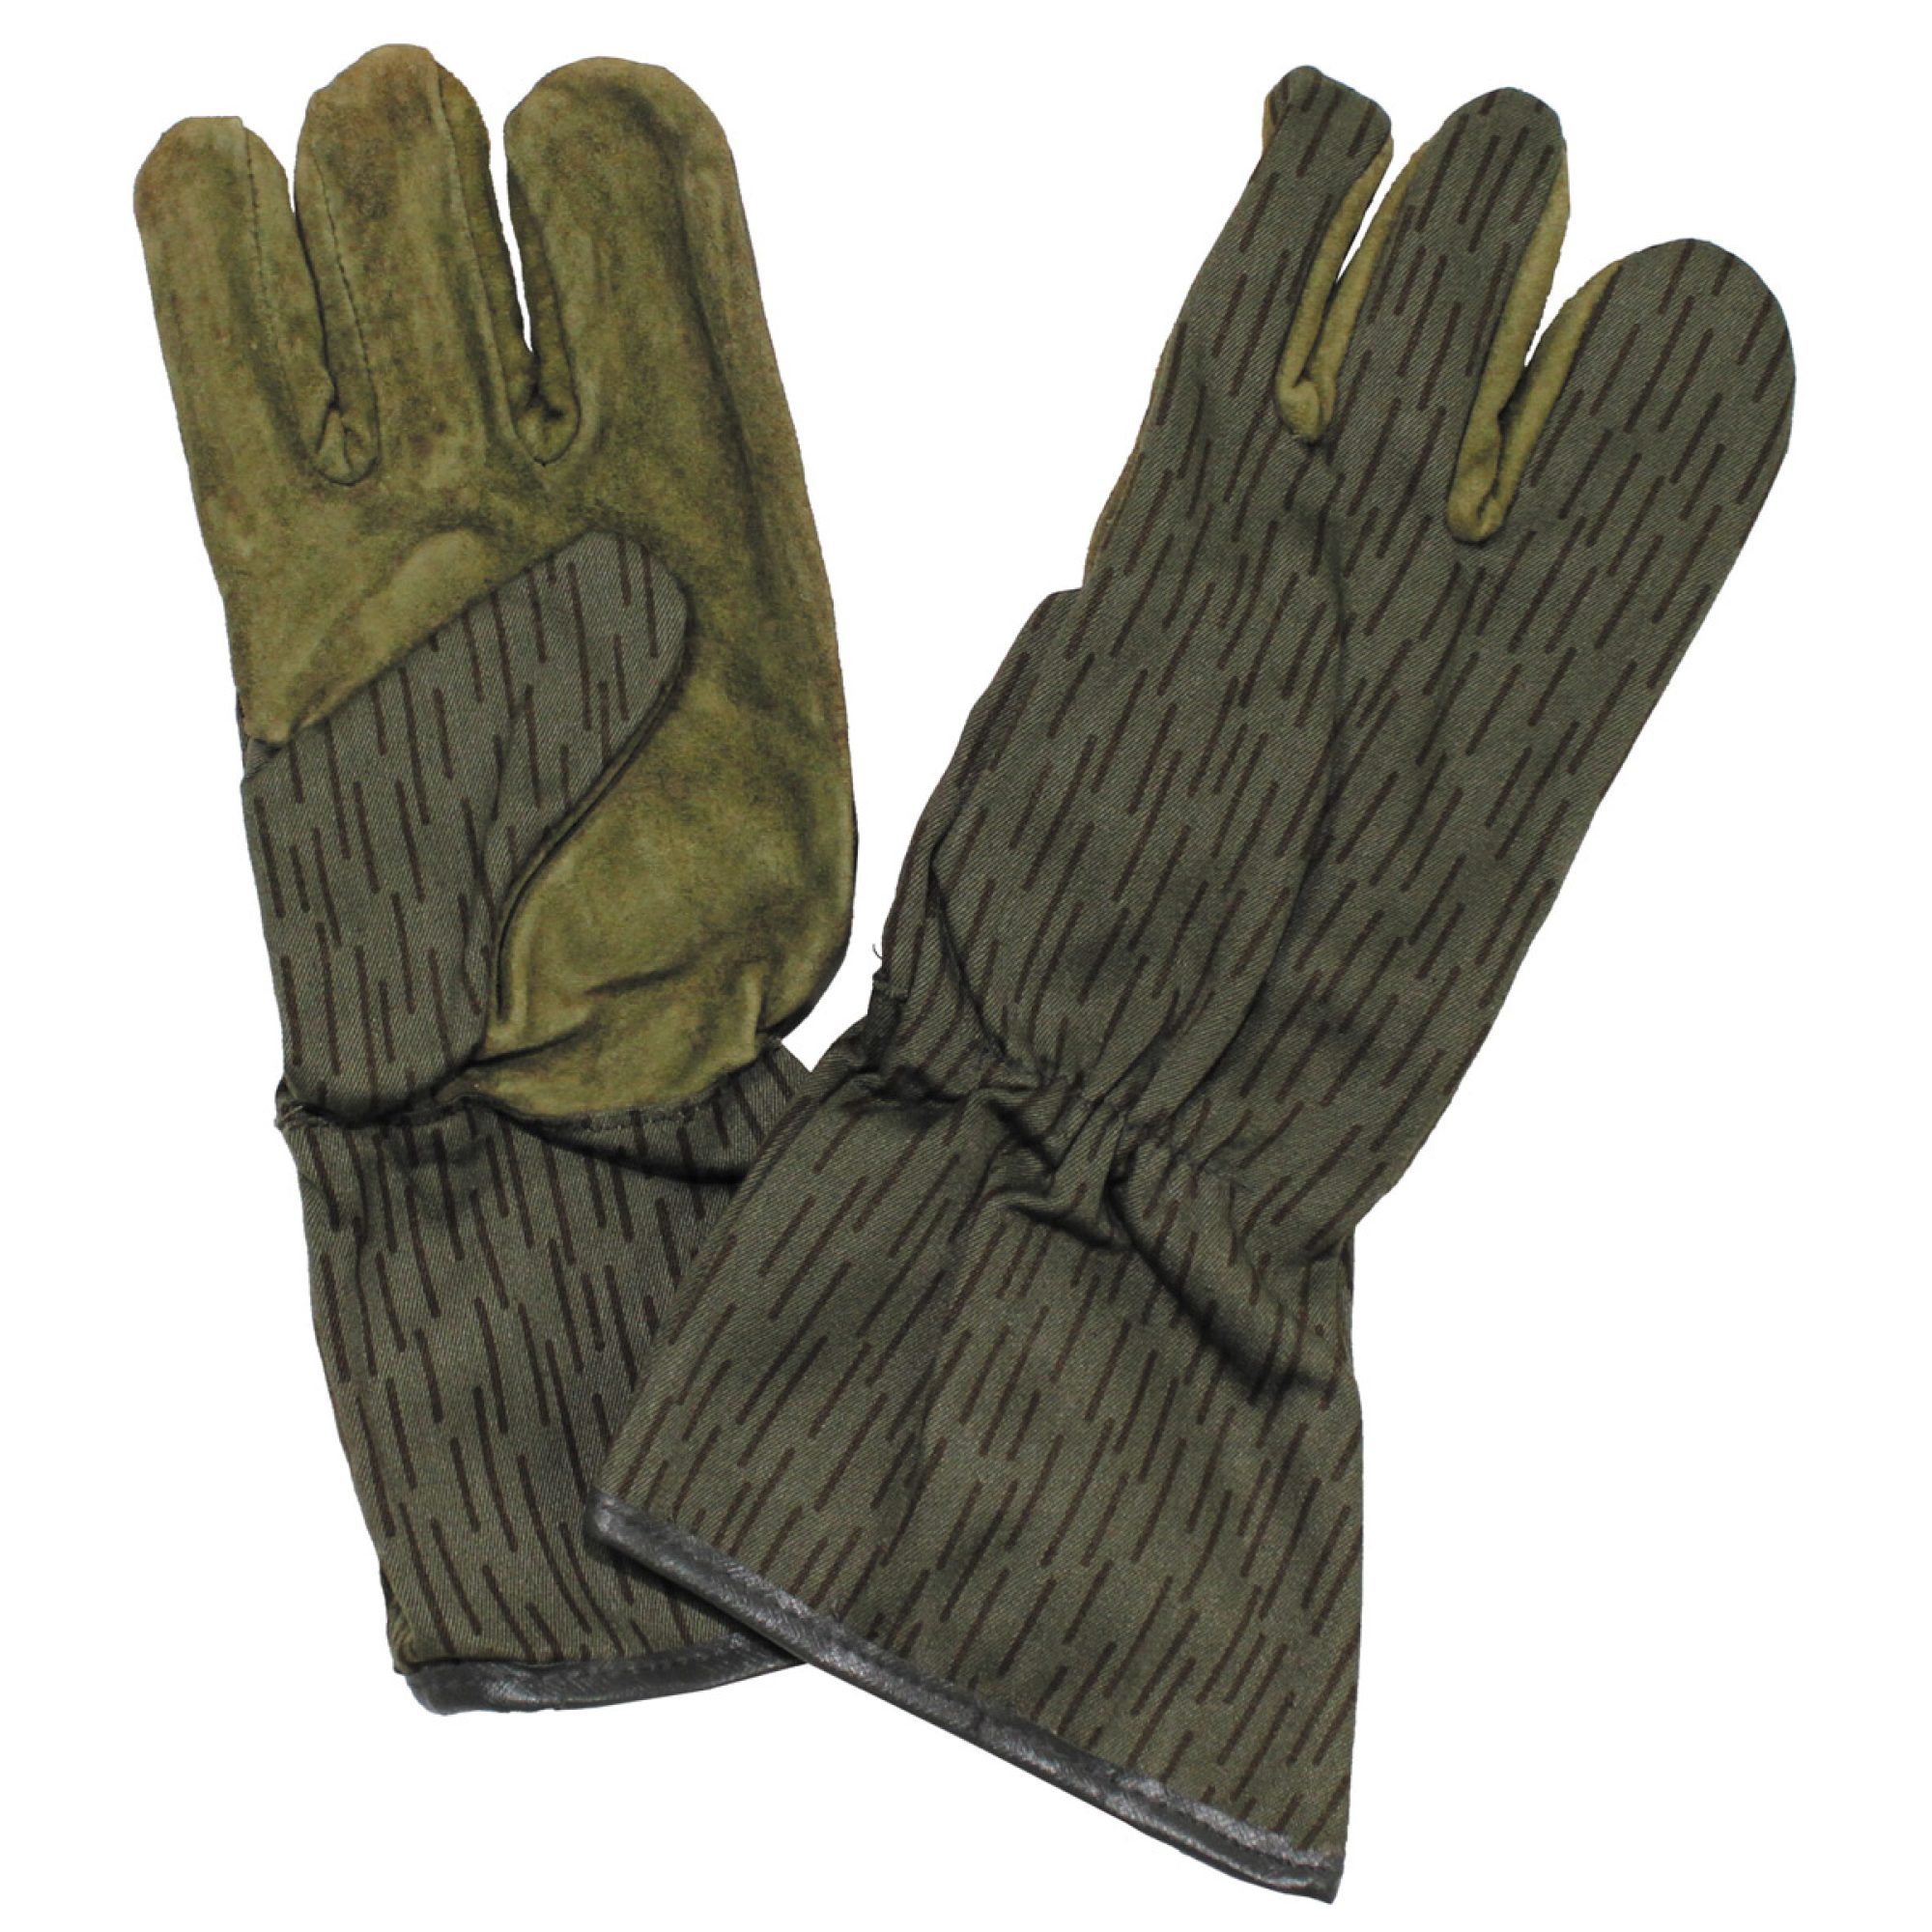 NVA Handschuhe,  4 Finger, strichtarn,  neuwertig (10 Stück)